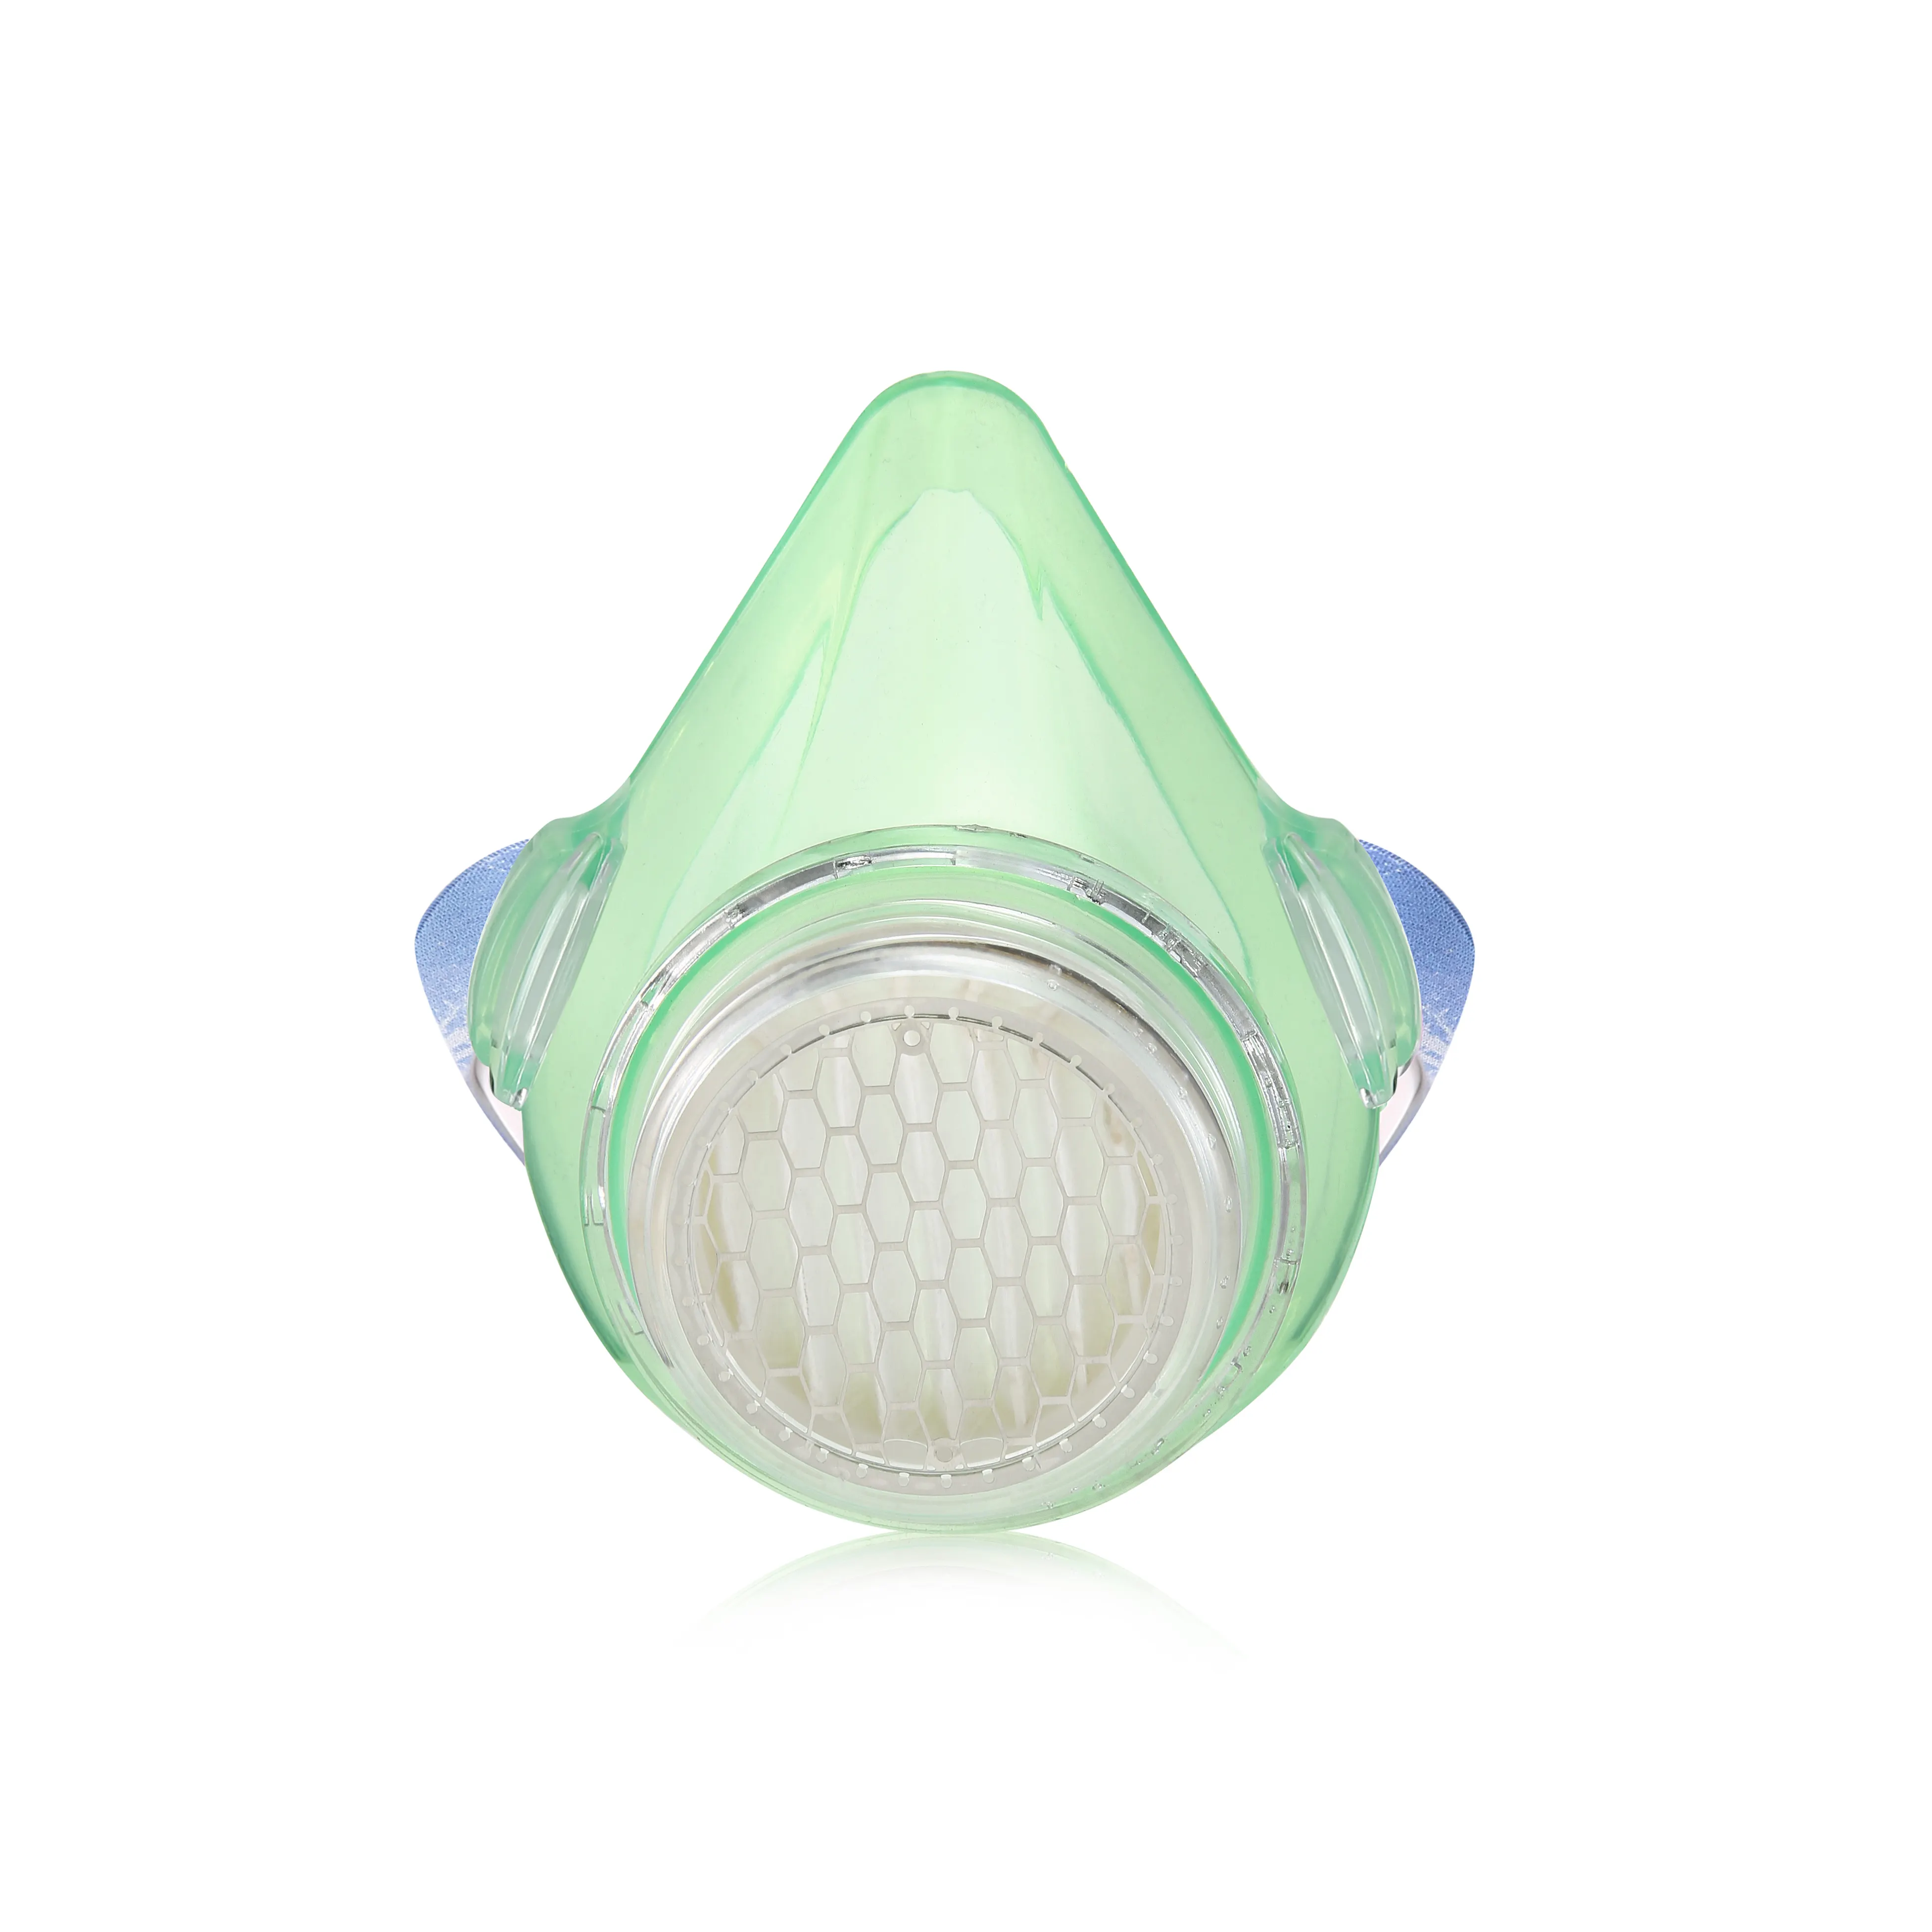 ワイルドファイアスモーク & アッシュ用の最新デザインの再利用可能なシリコンKN95防塵呼吸マスクPm2.5マスク